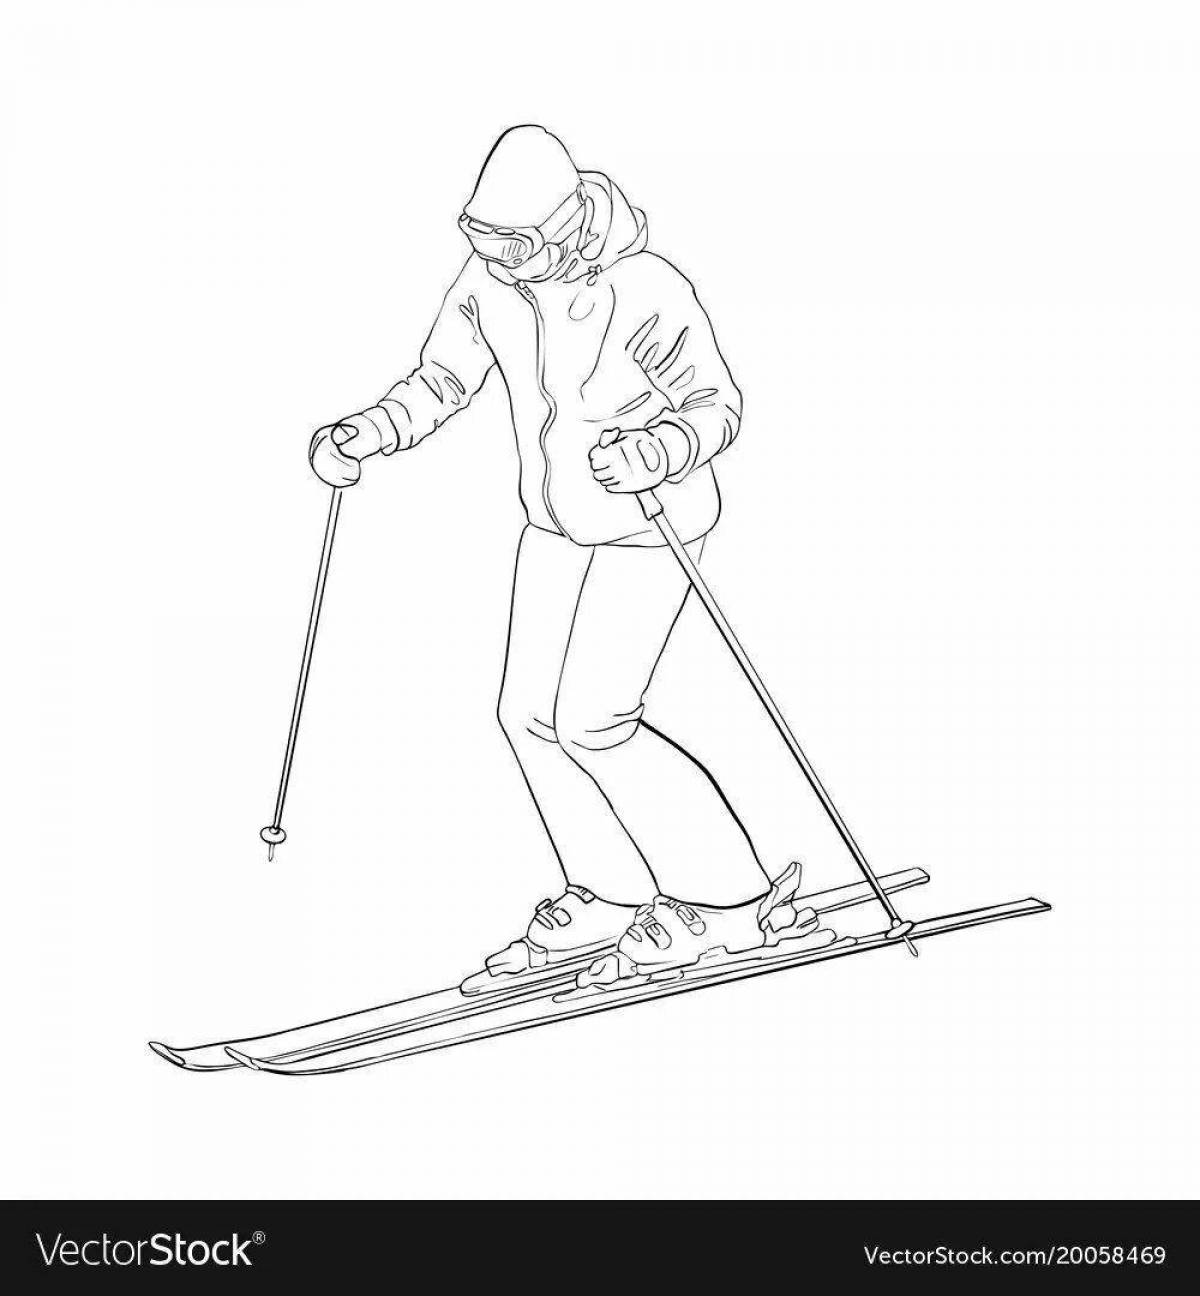 Мужественный лыжник в движении